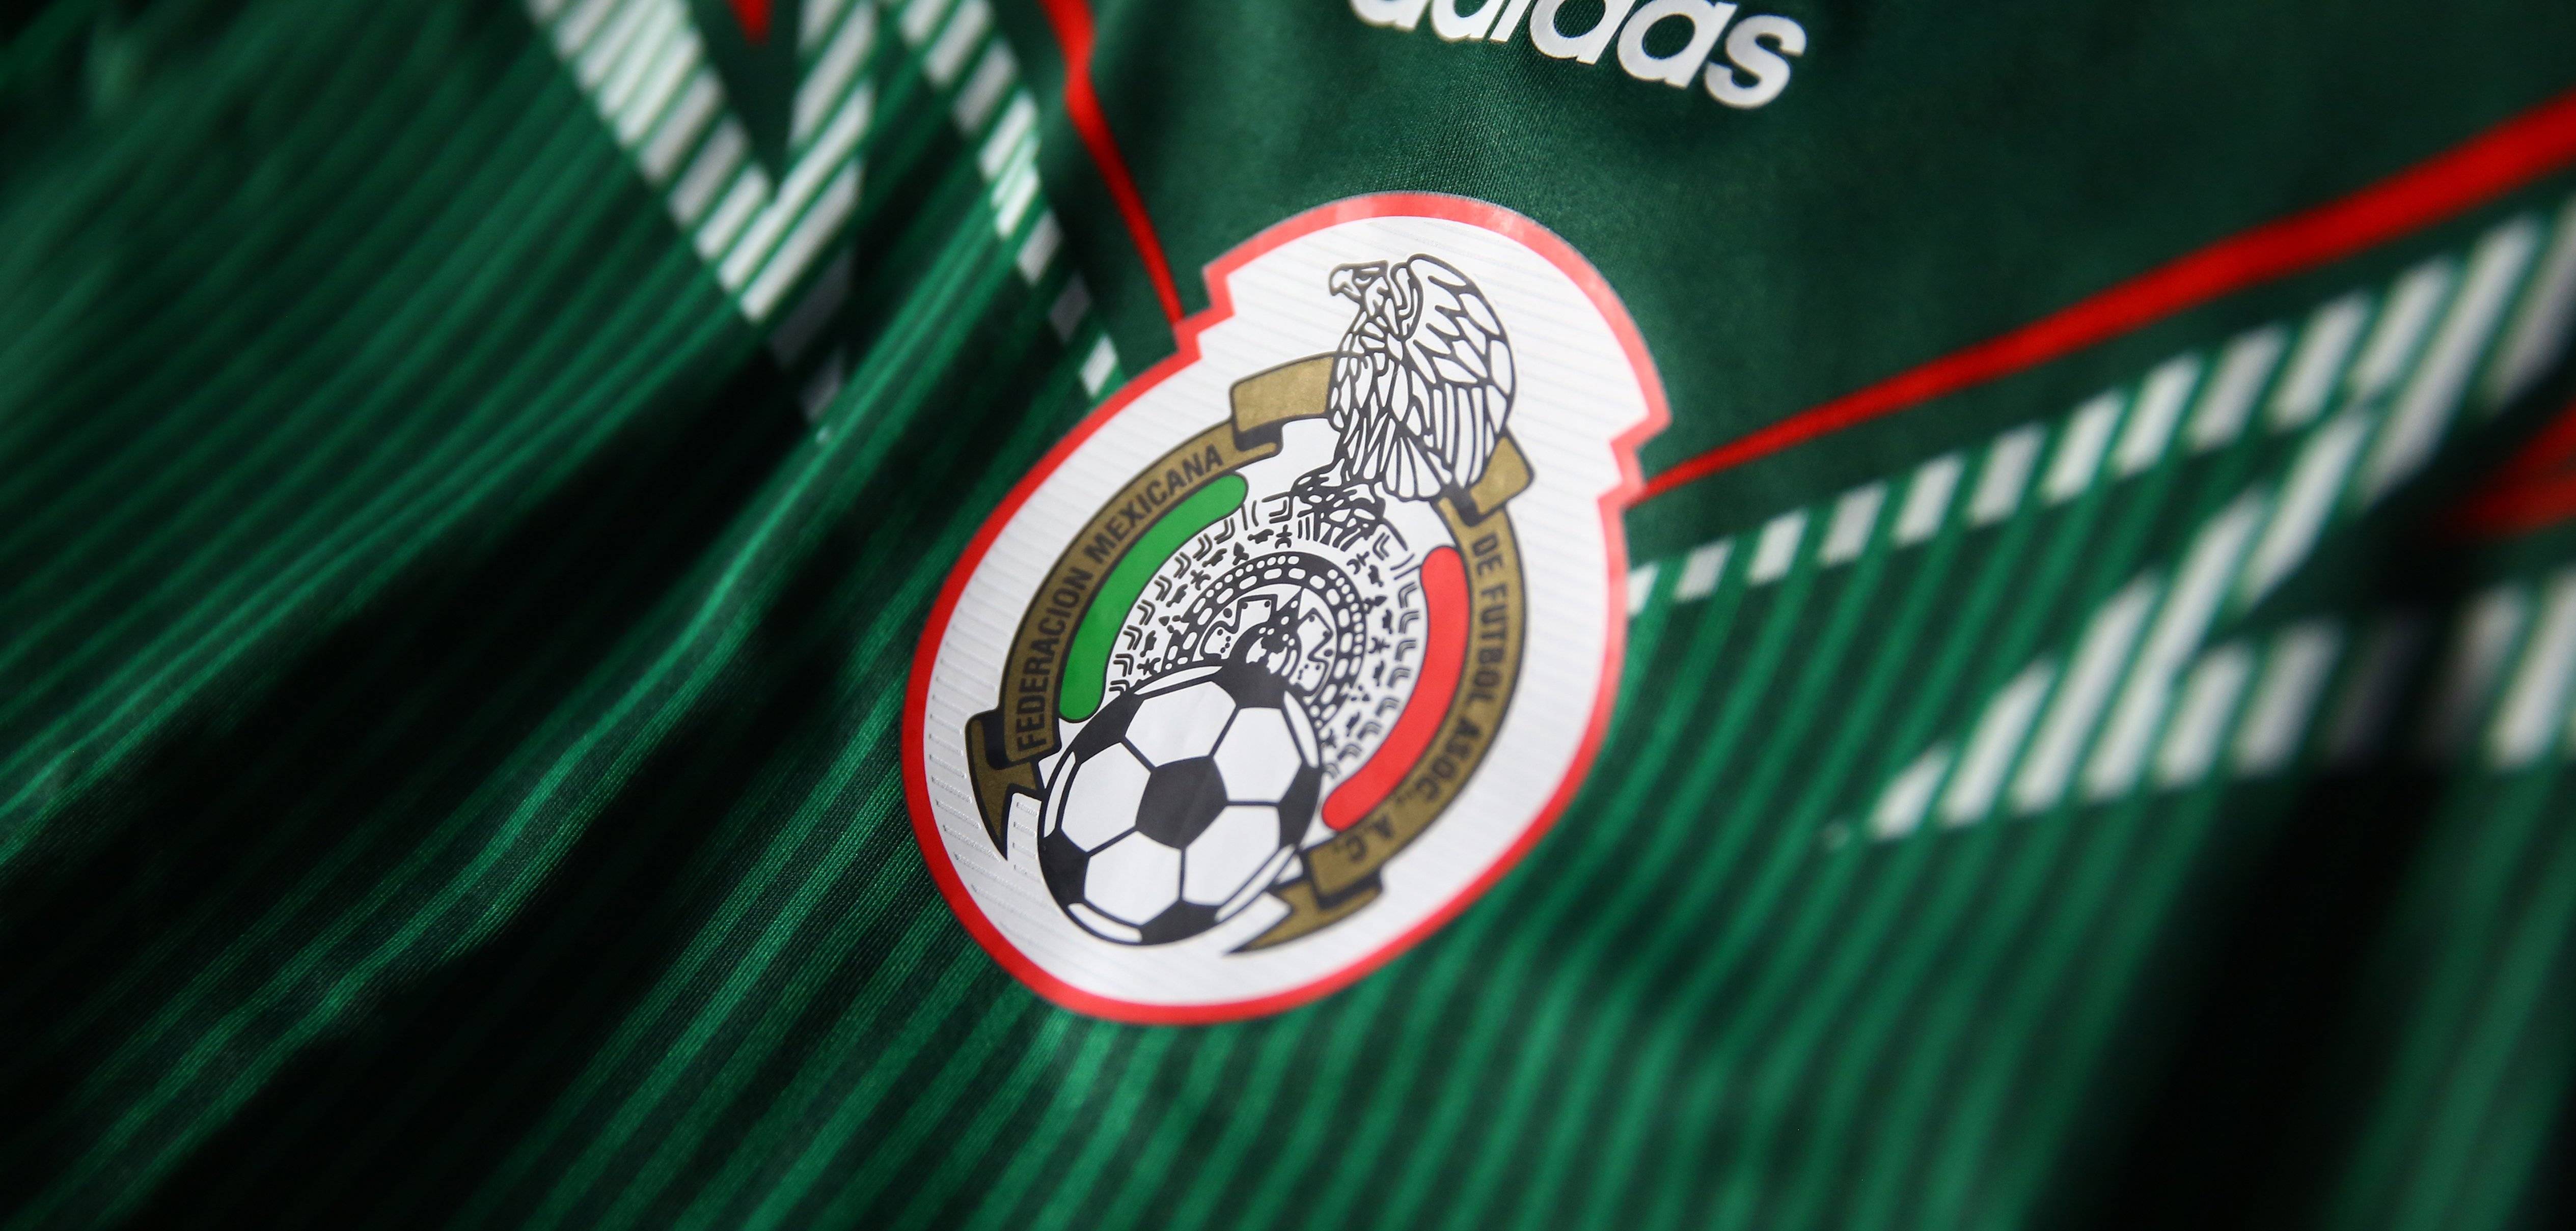 MEXICO soccer (8) wallpaperx2418